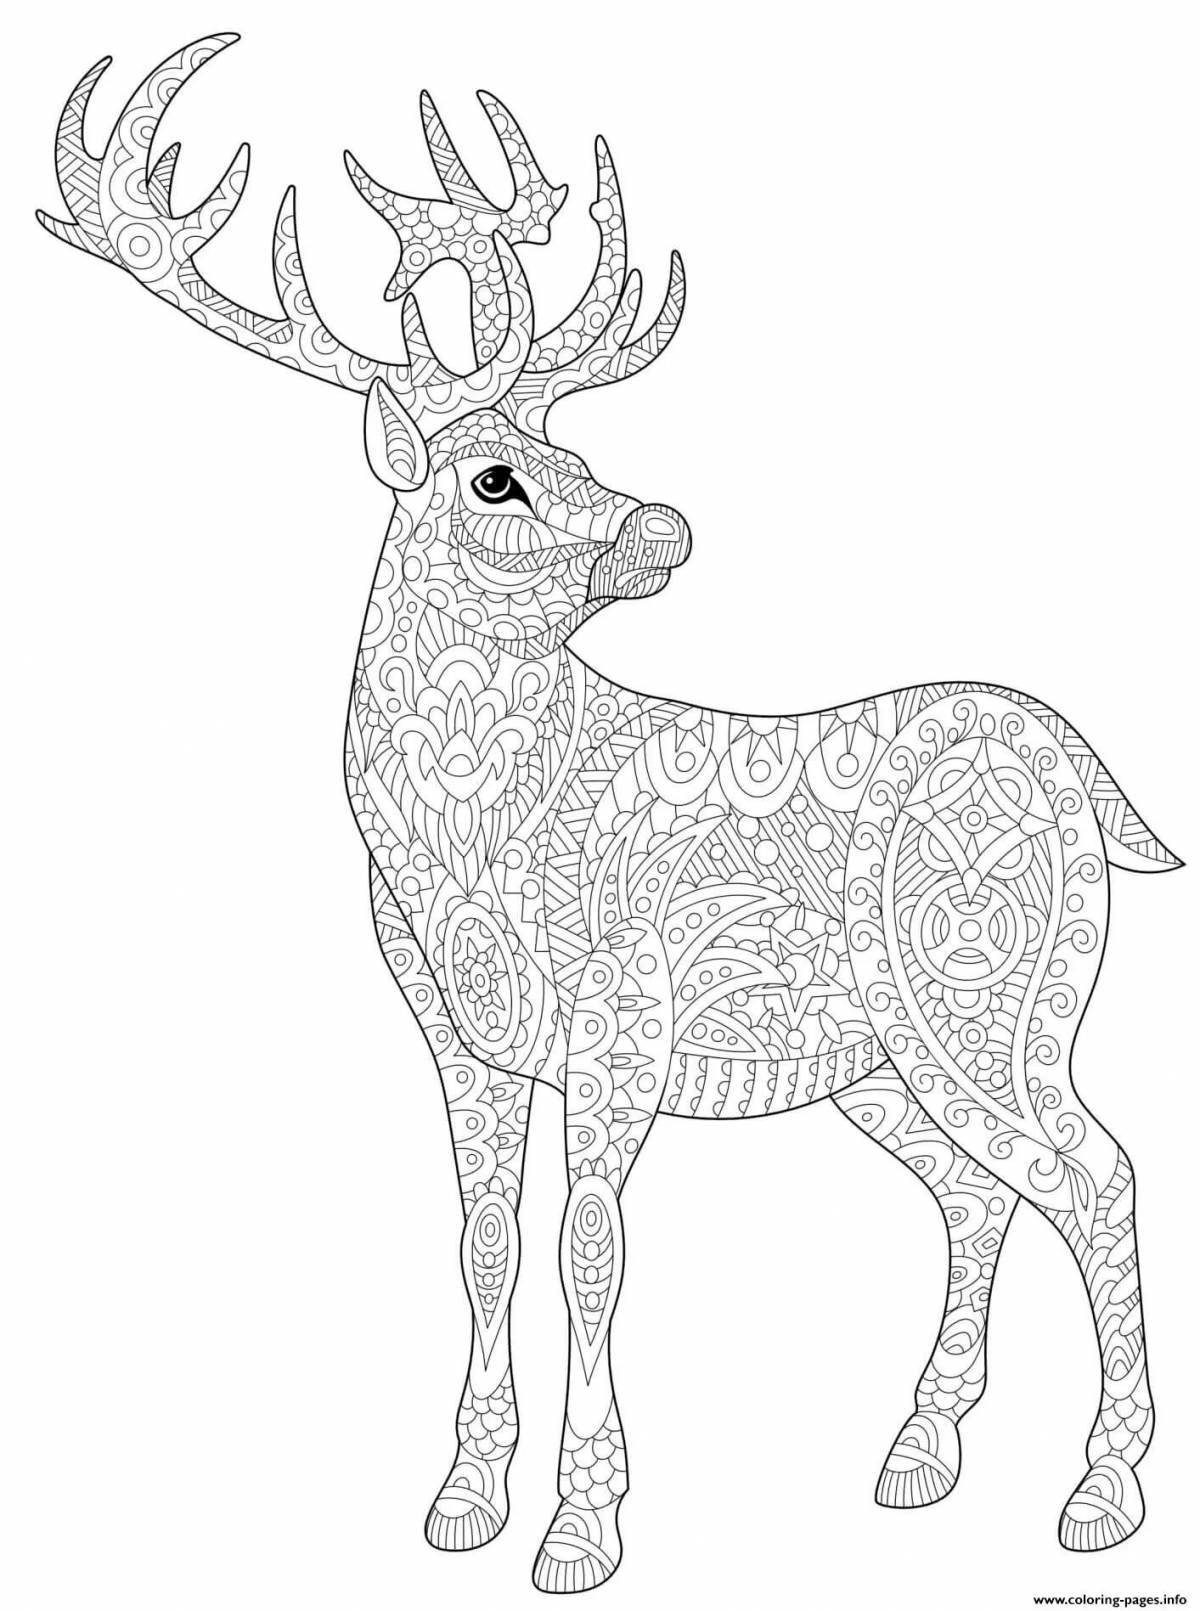 Colorful deer antistress coloring book